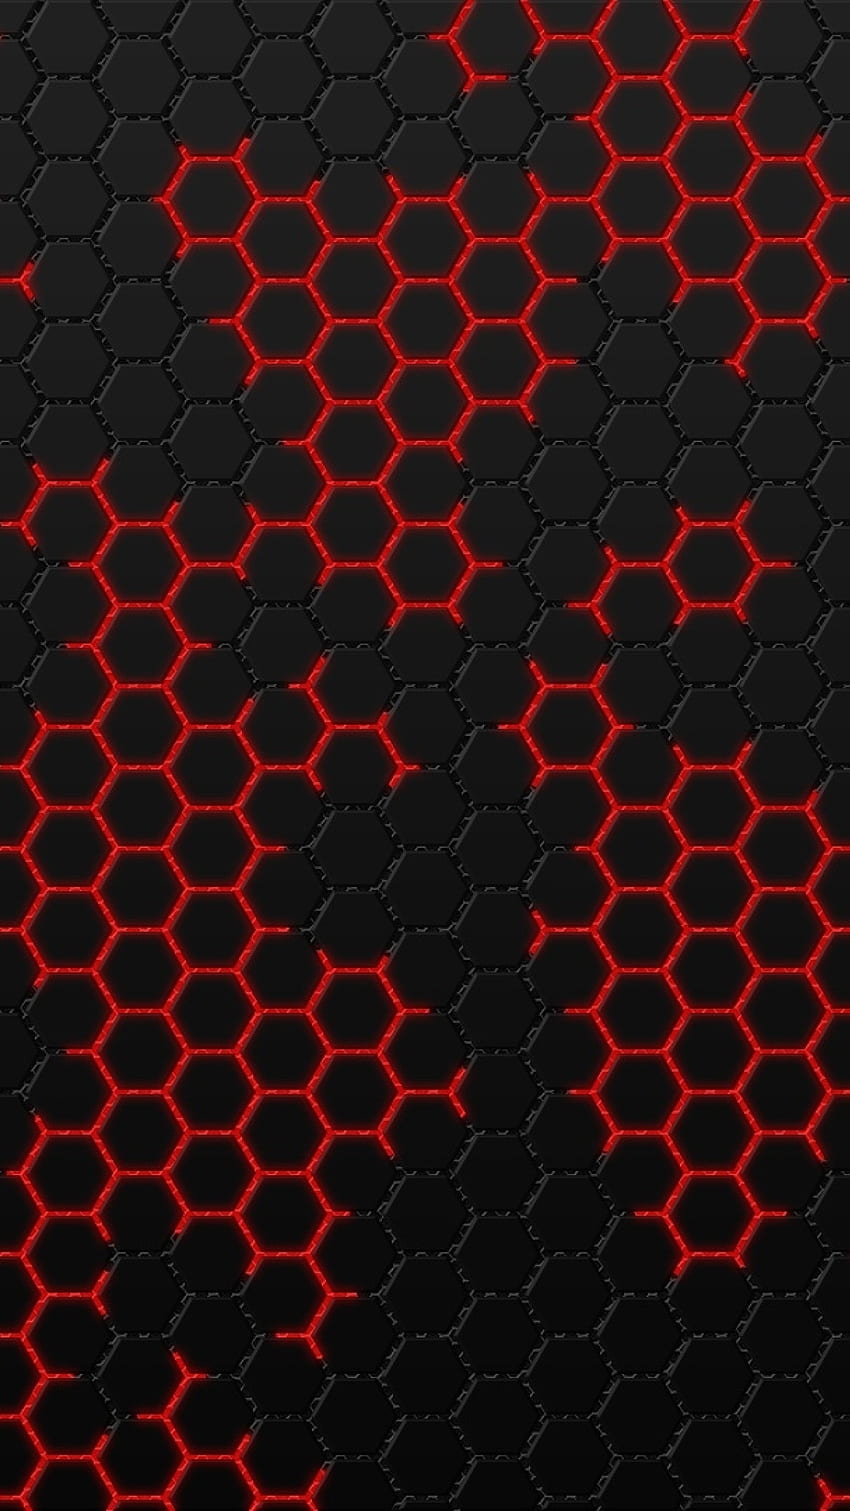 Trái tim của bạn sẽ đập nhanh trước vẻ đẹp của hình học hexagon đen đỏ. Xem ngay hình ảnh này để nhận được cảm hứng và sự phấn khích từ những hình ảnh độc đáo này.